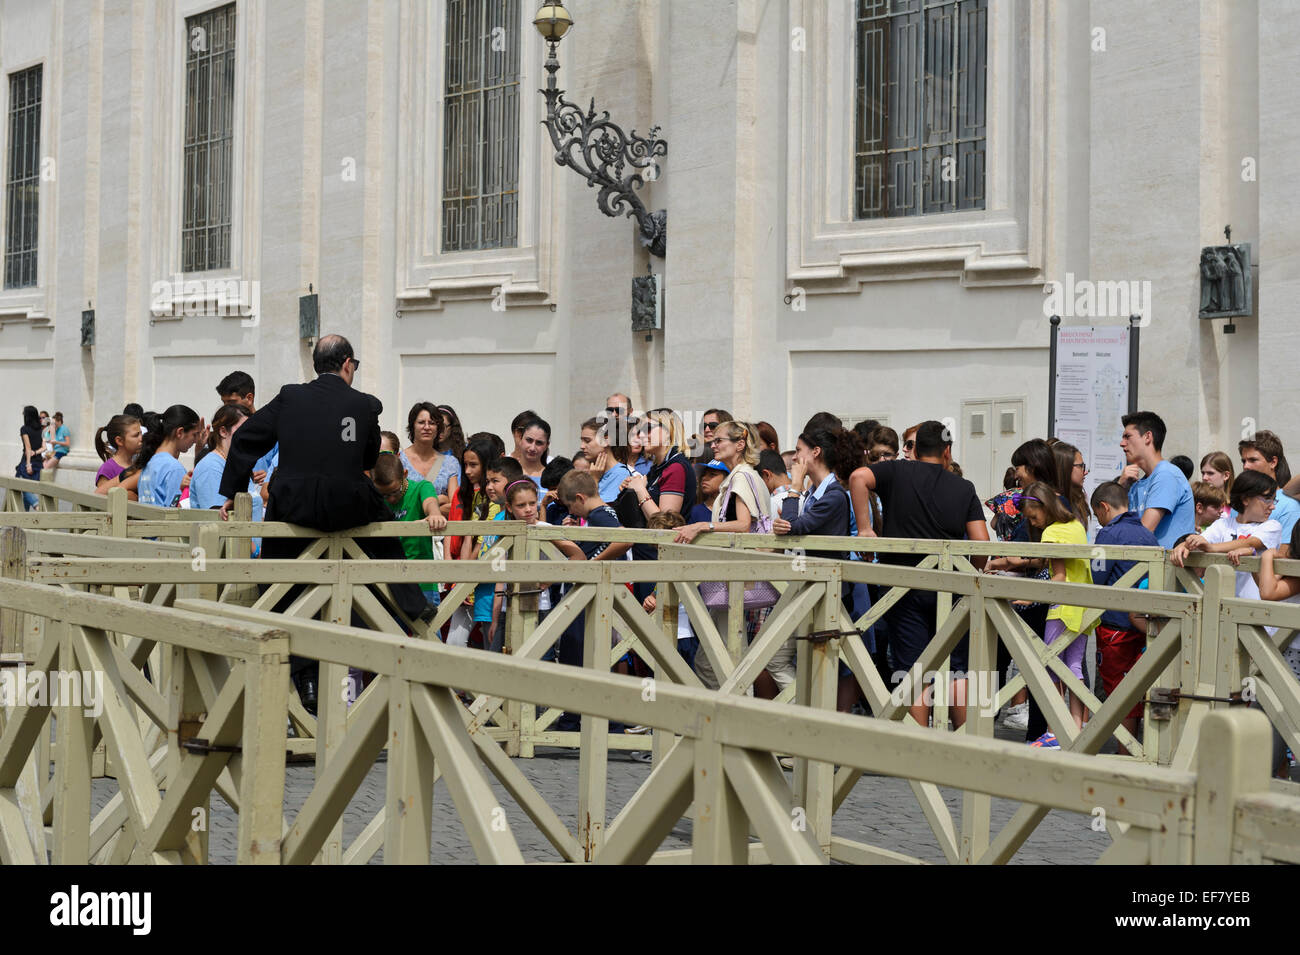 Eine Gruppe von Touristen in der legendären St. Peter Platz im Vatikan, Rom, Italien. Stockfoto